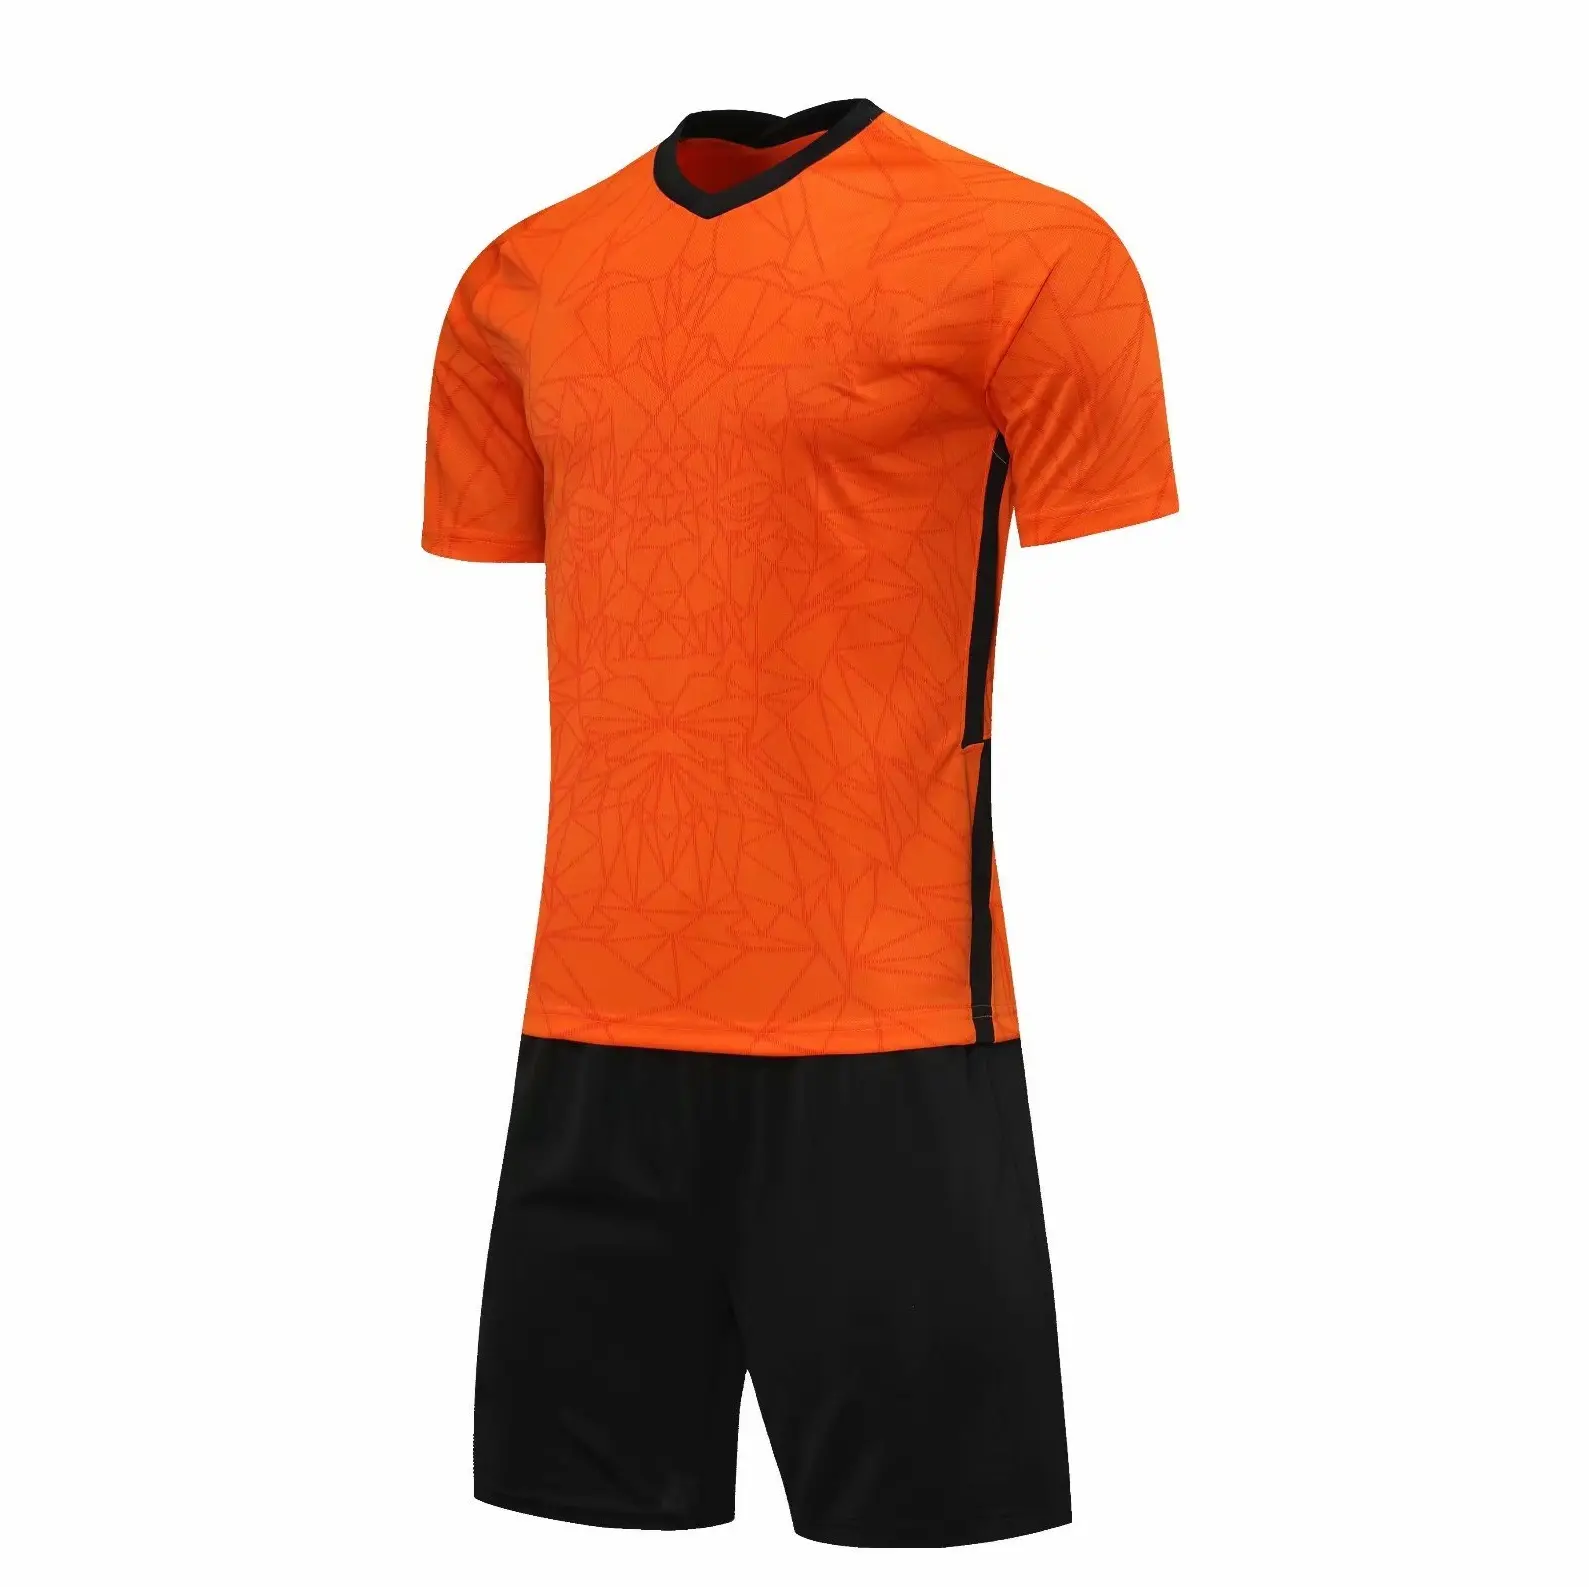 Maillot de football, uniforme de football style néerlandais, maillot, chemise, sans logo, séchage rapide, 2021, 2022